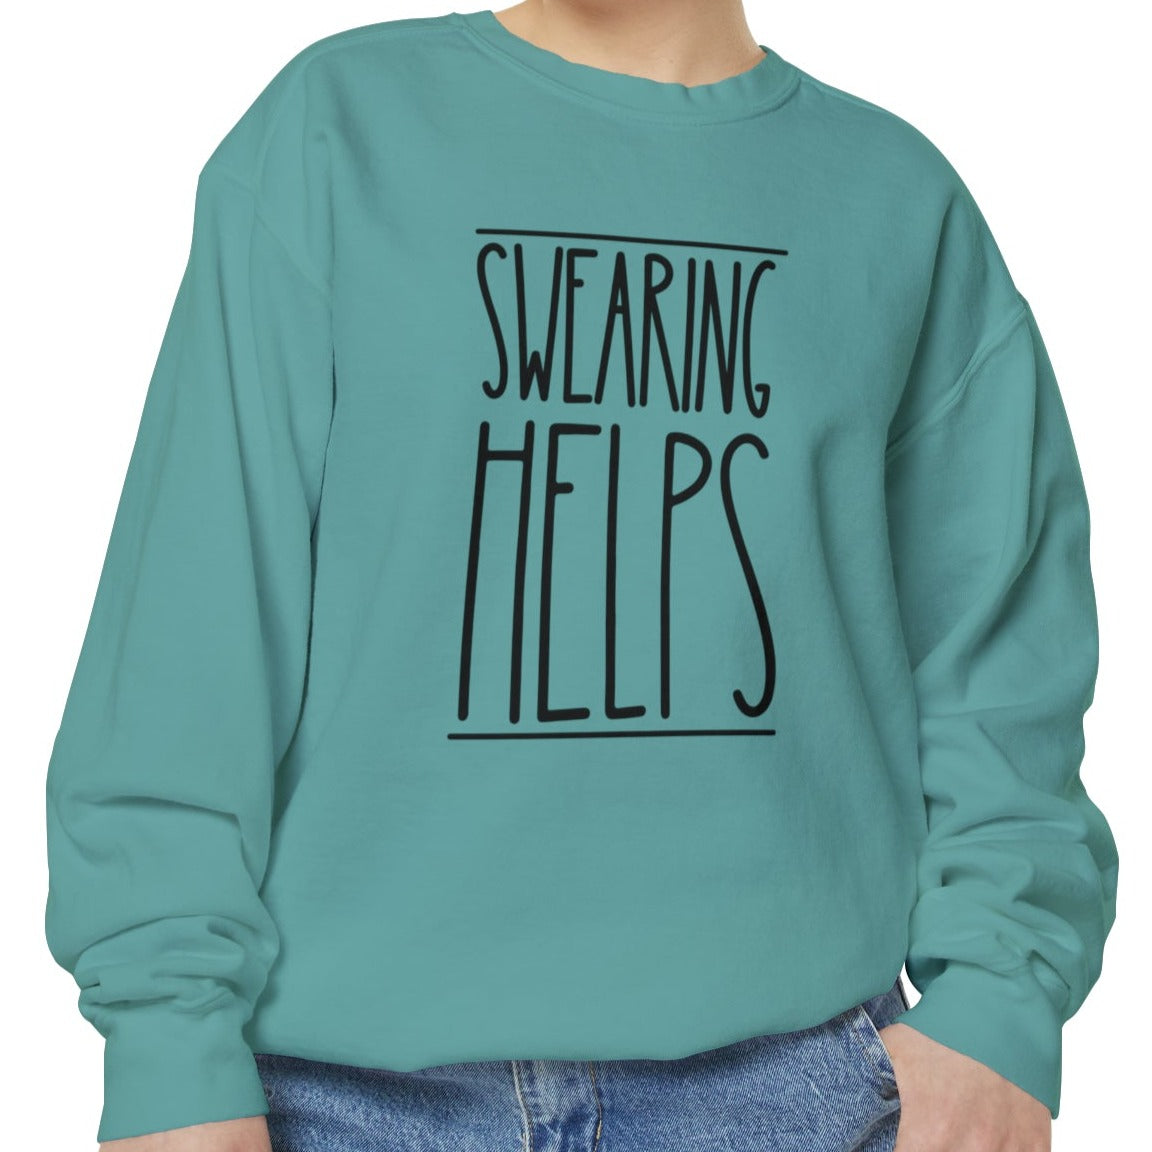 Swearing Helps: Women's Comfort Colors Sweatshirt for Cozy Comfort - Eddy and Rita